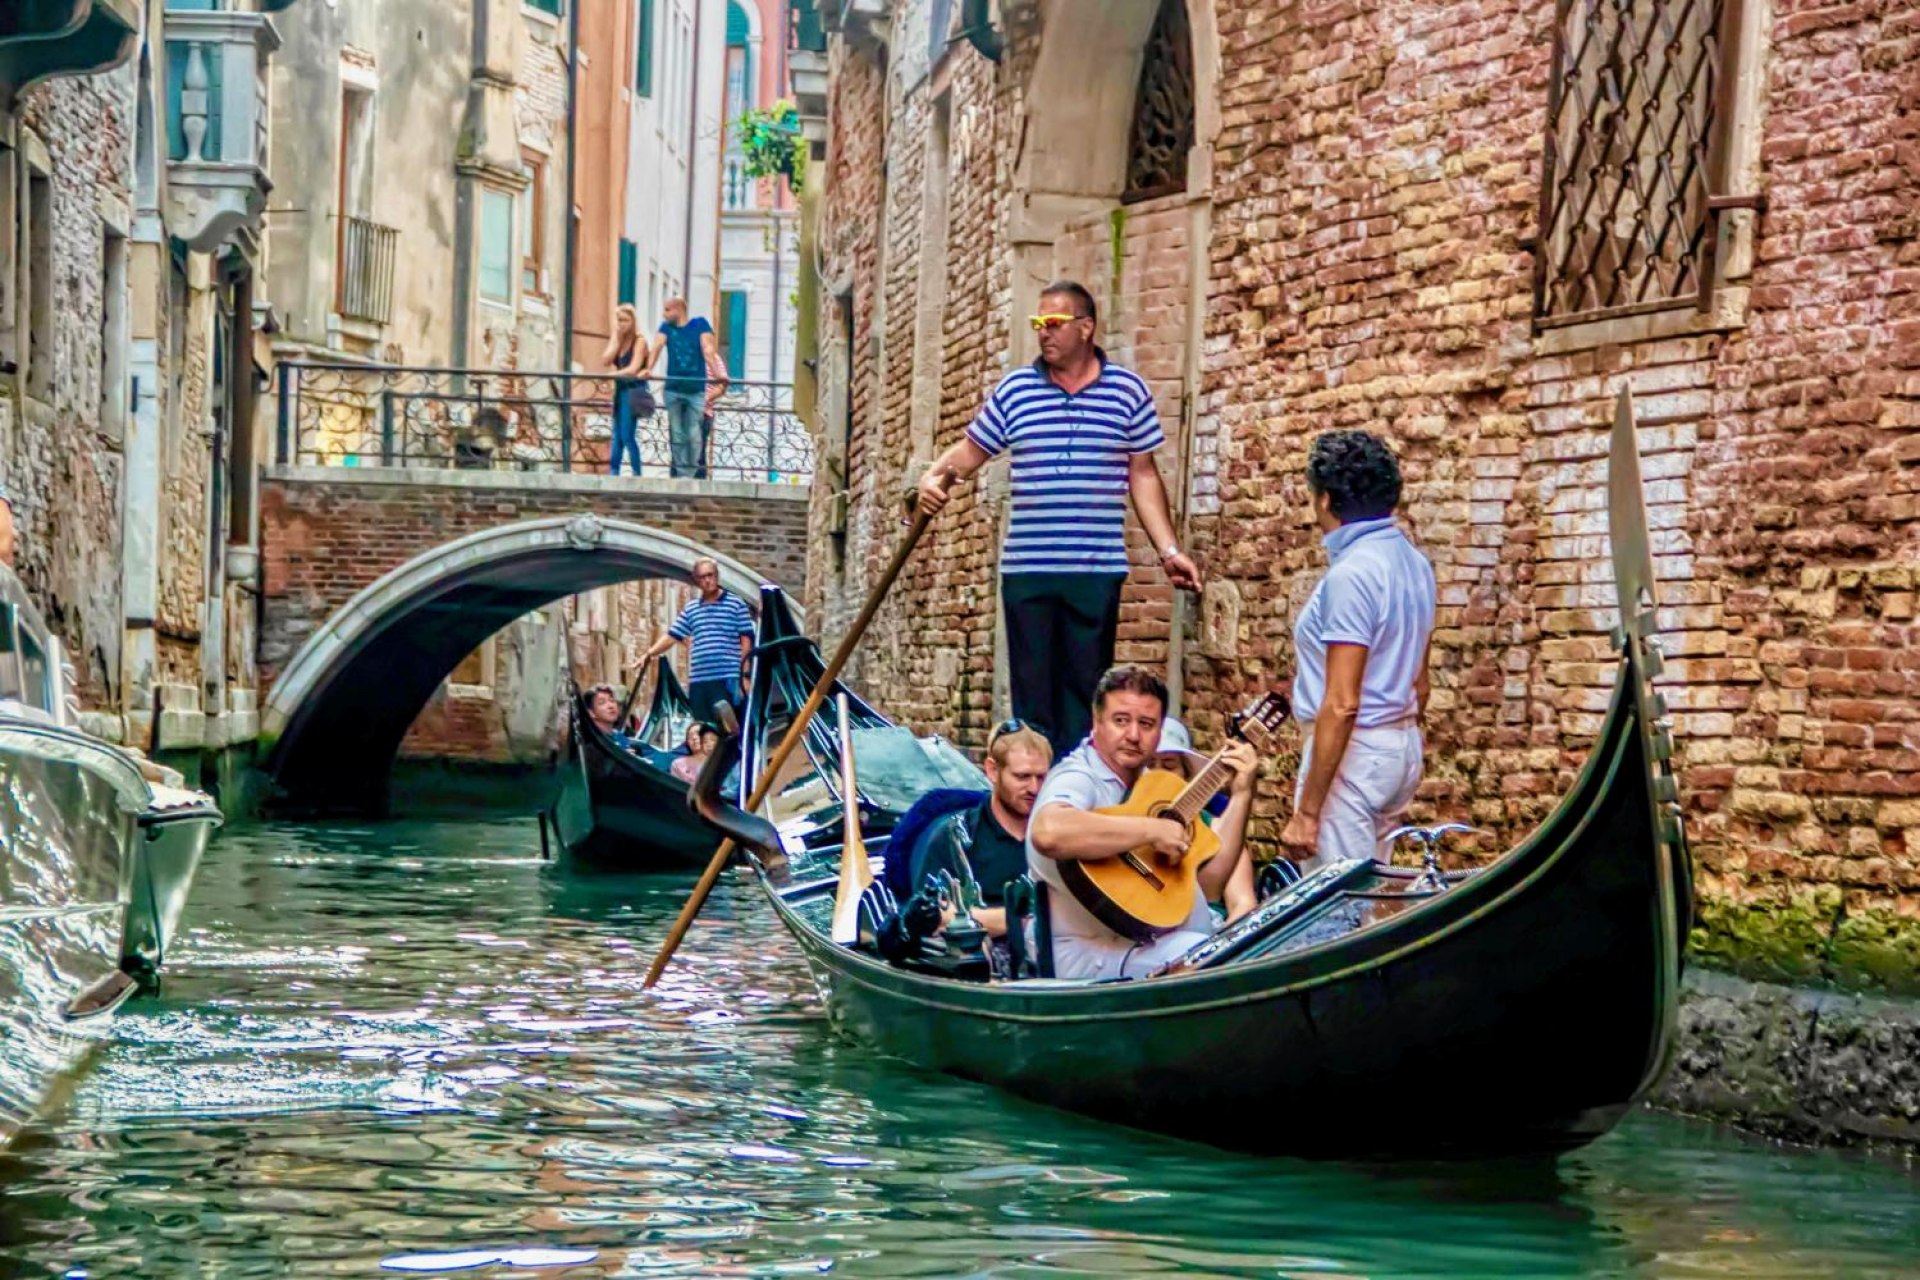 Gemeinsame Gondelfahrt mit Serenade in Venedig